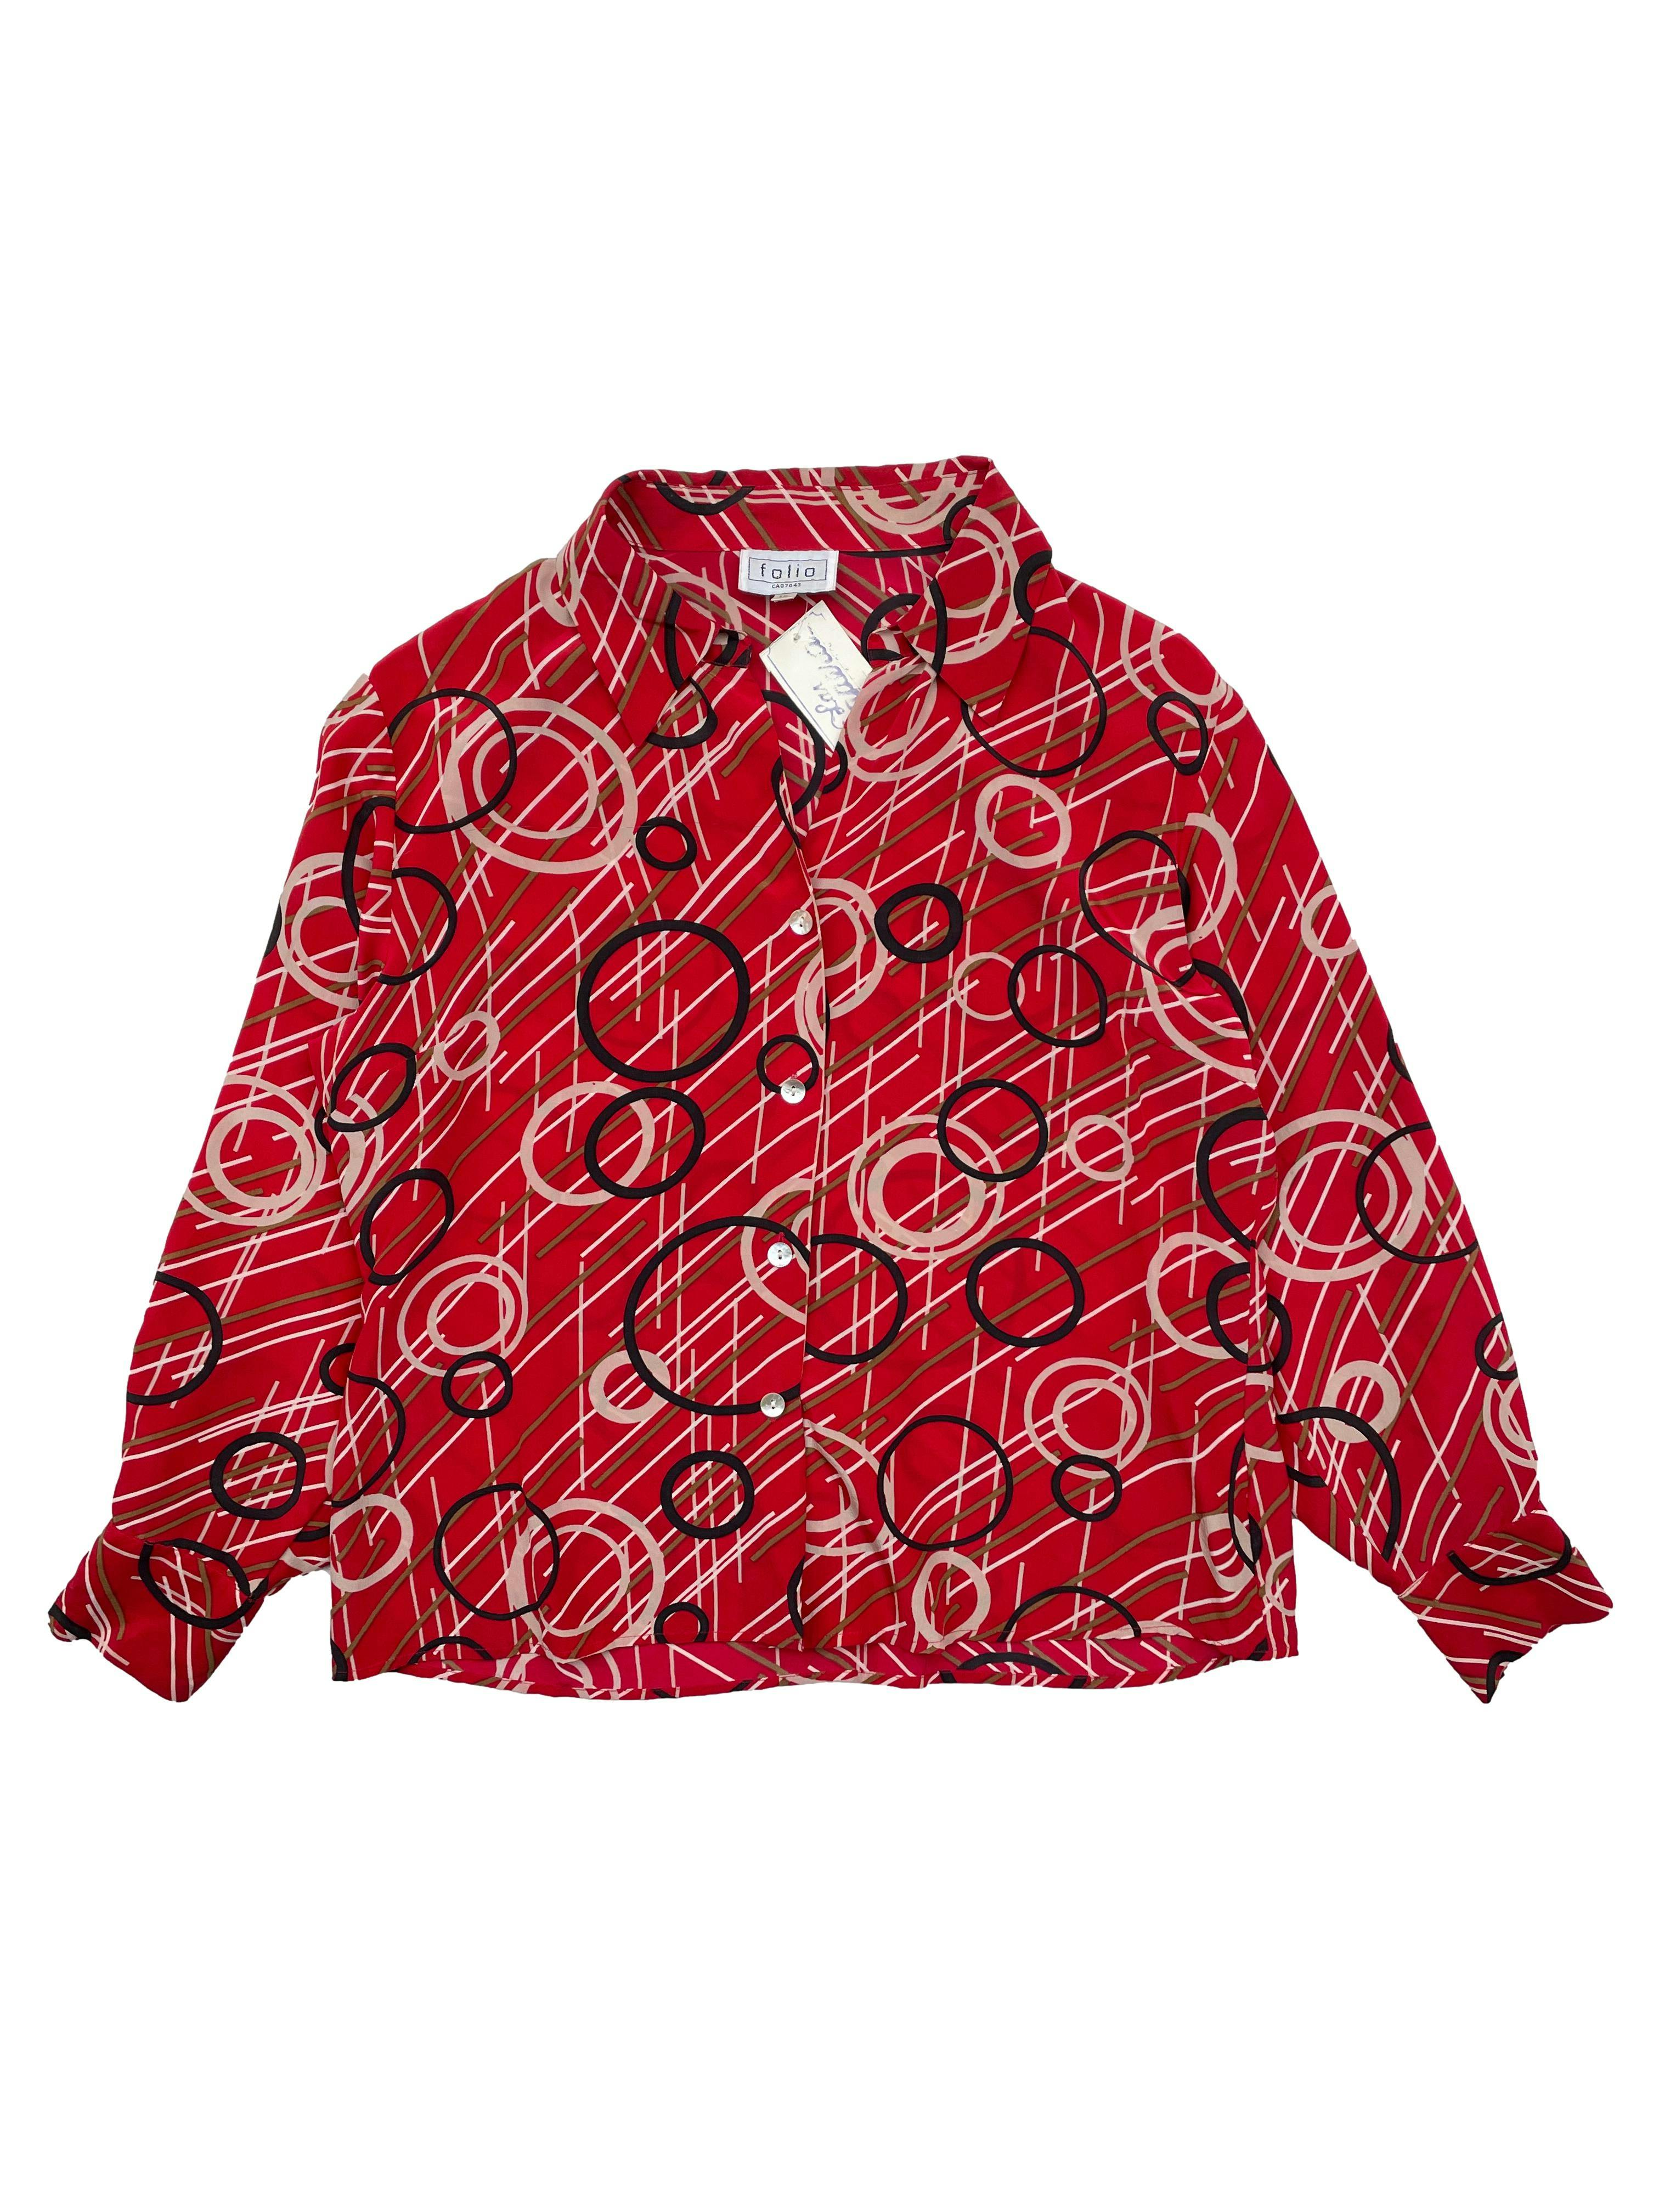 Blusa vintage de 100% seda roja con estampado geométrico, botones nacarados. Busto 110cm, Largo 55cm.